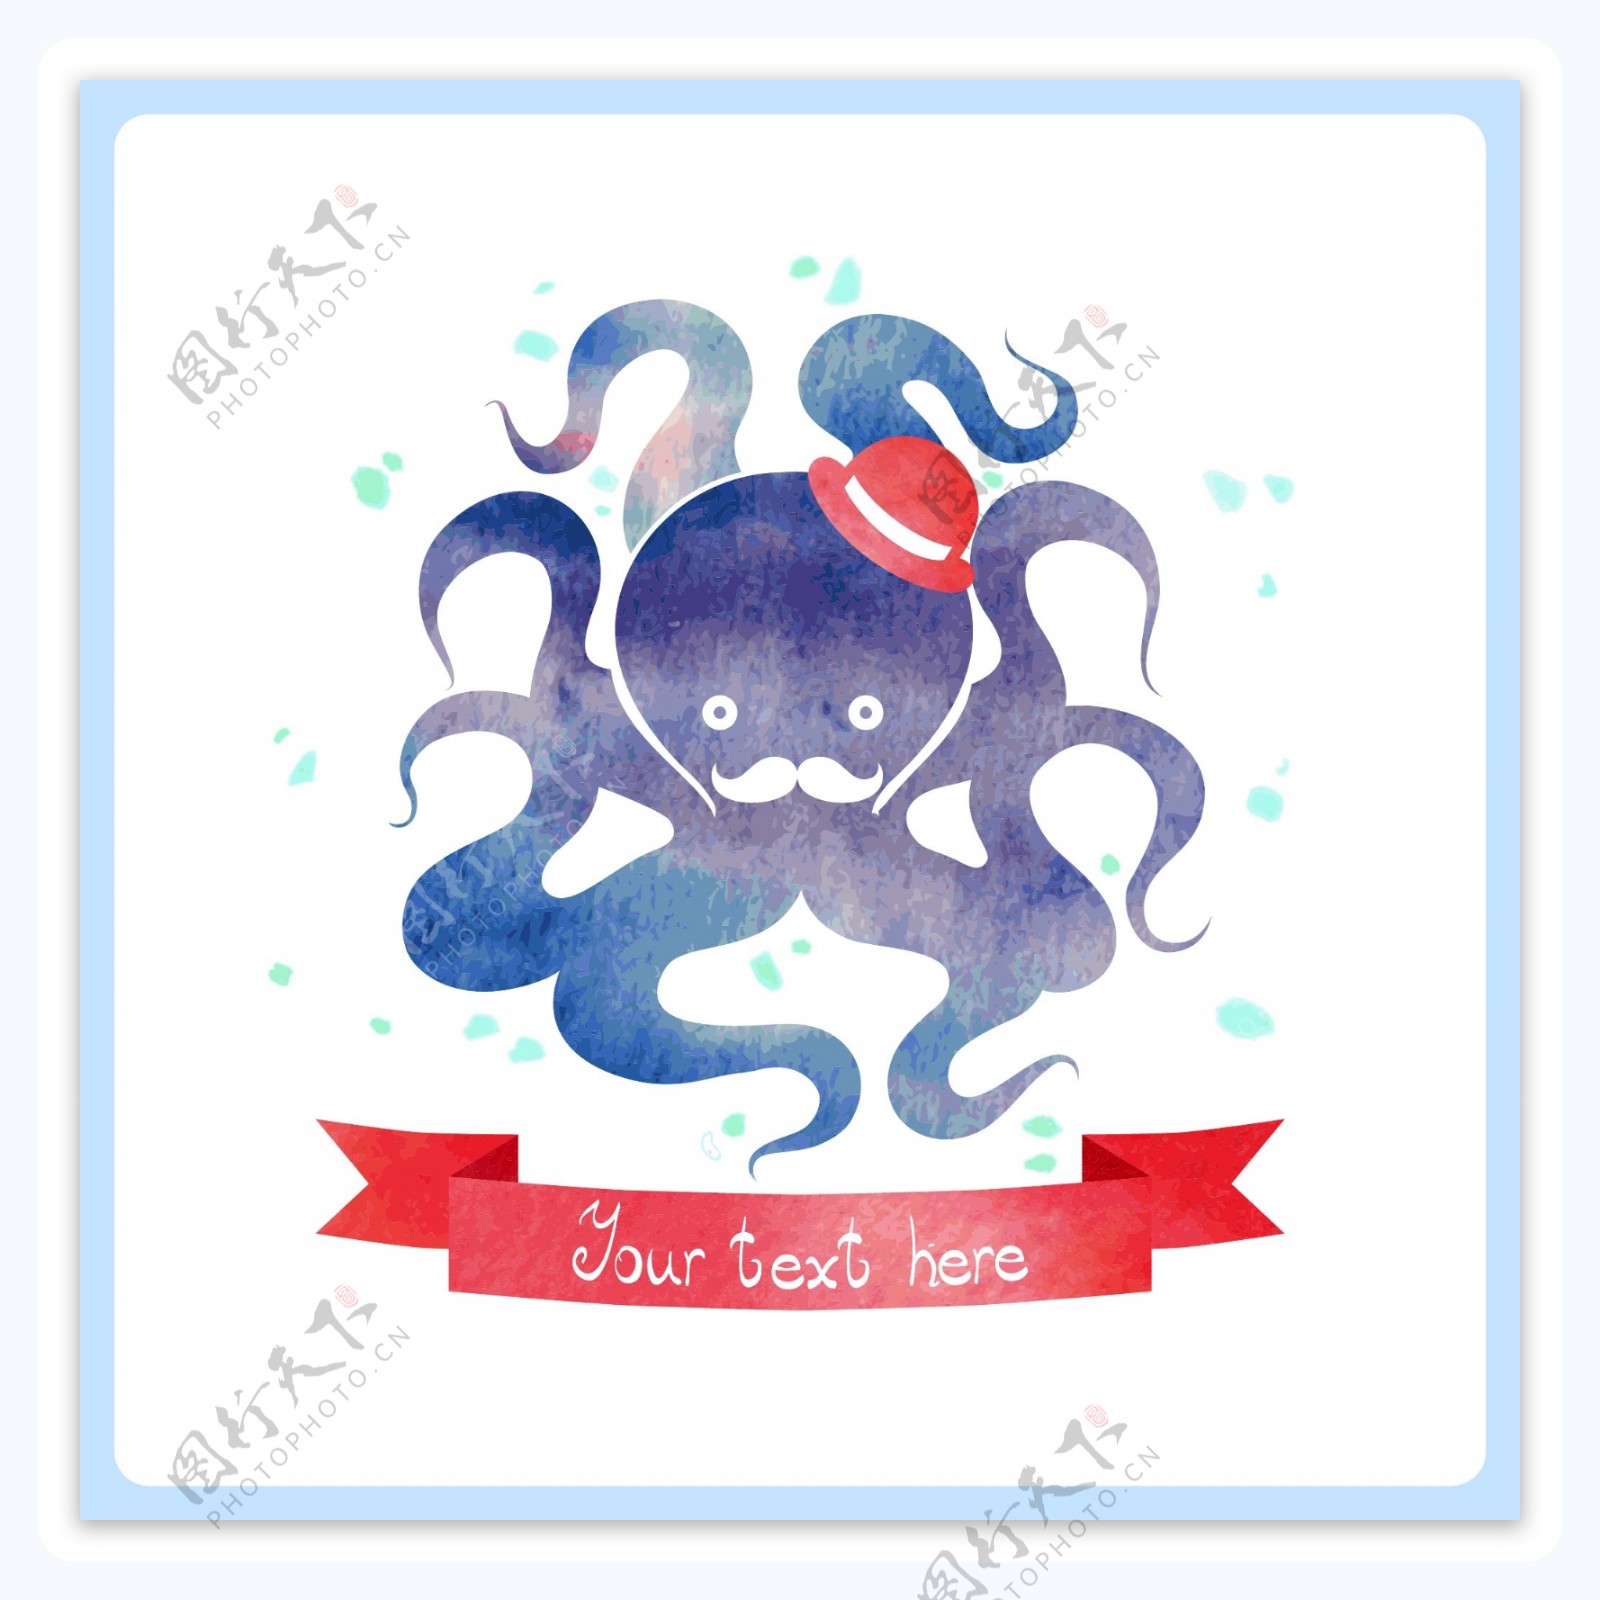 水彩绘抽象章鱼插画